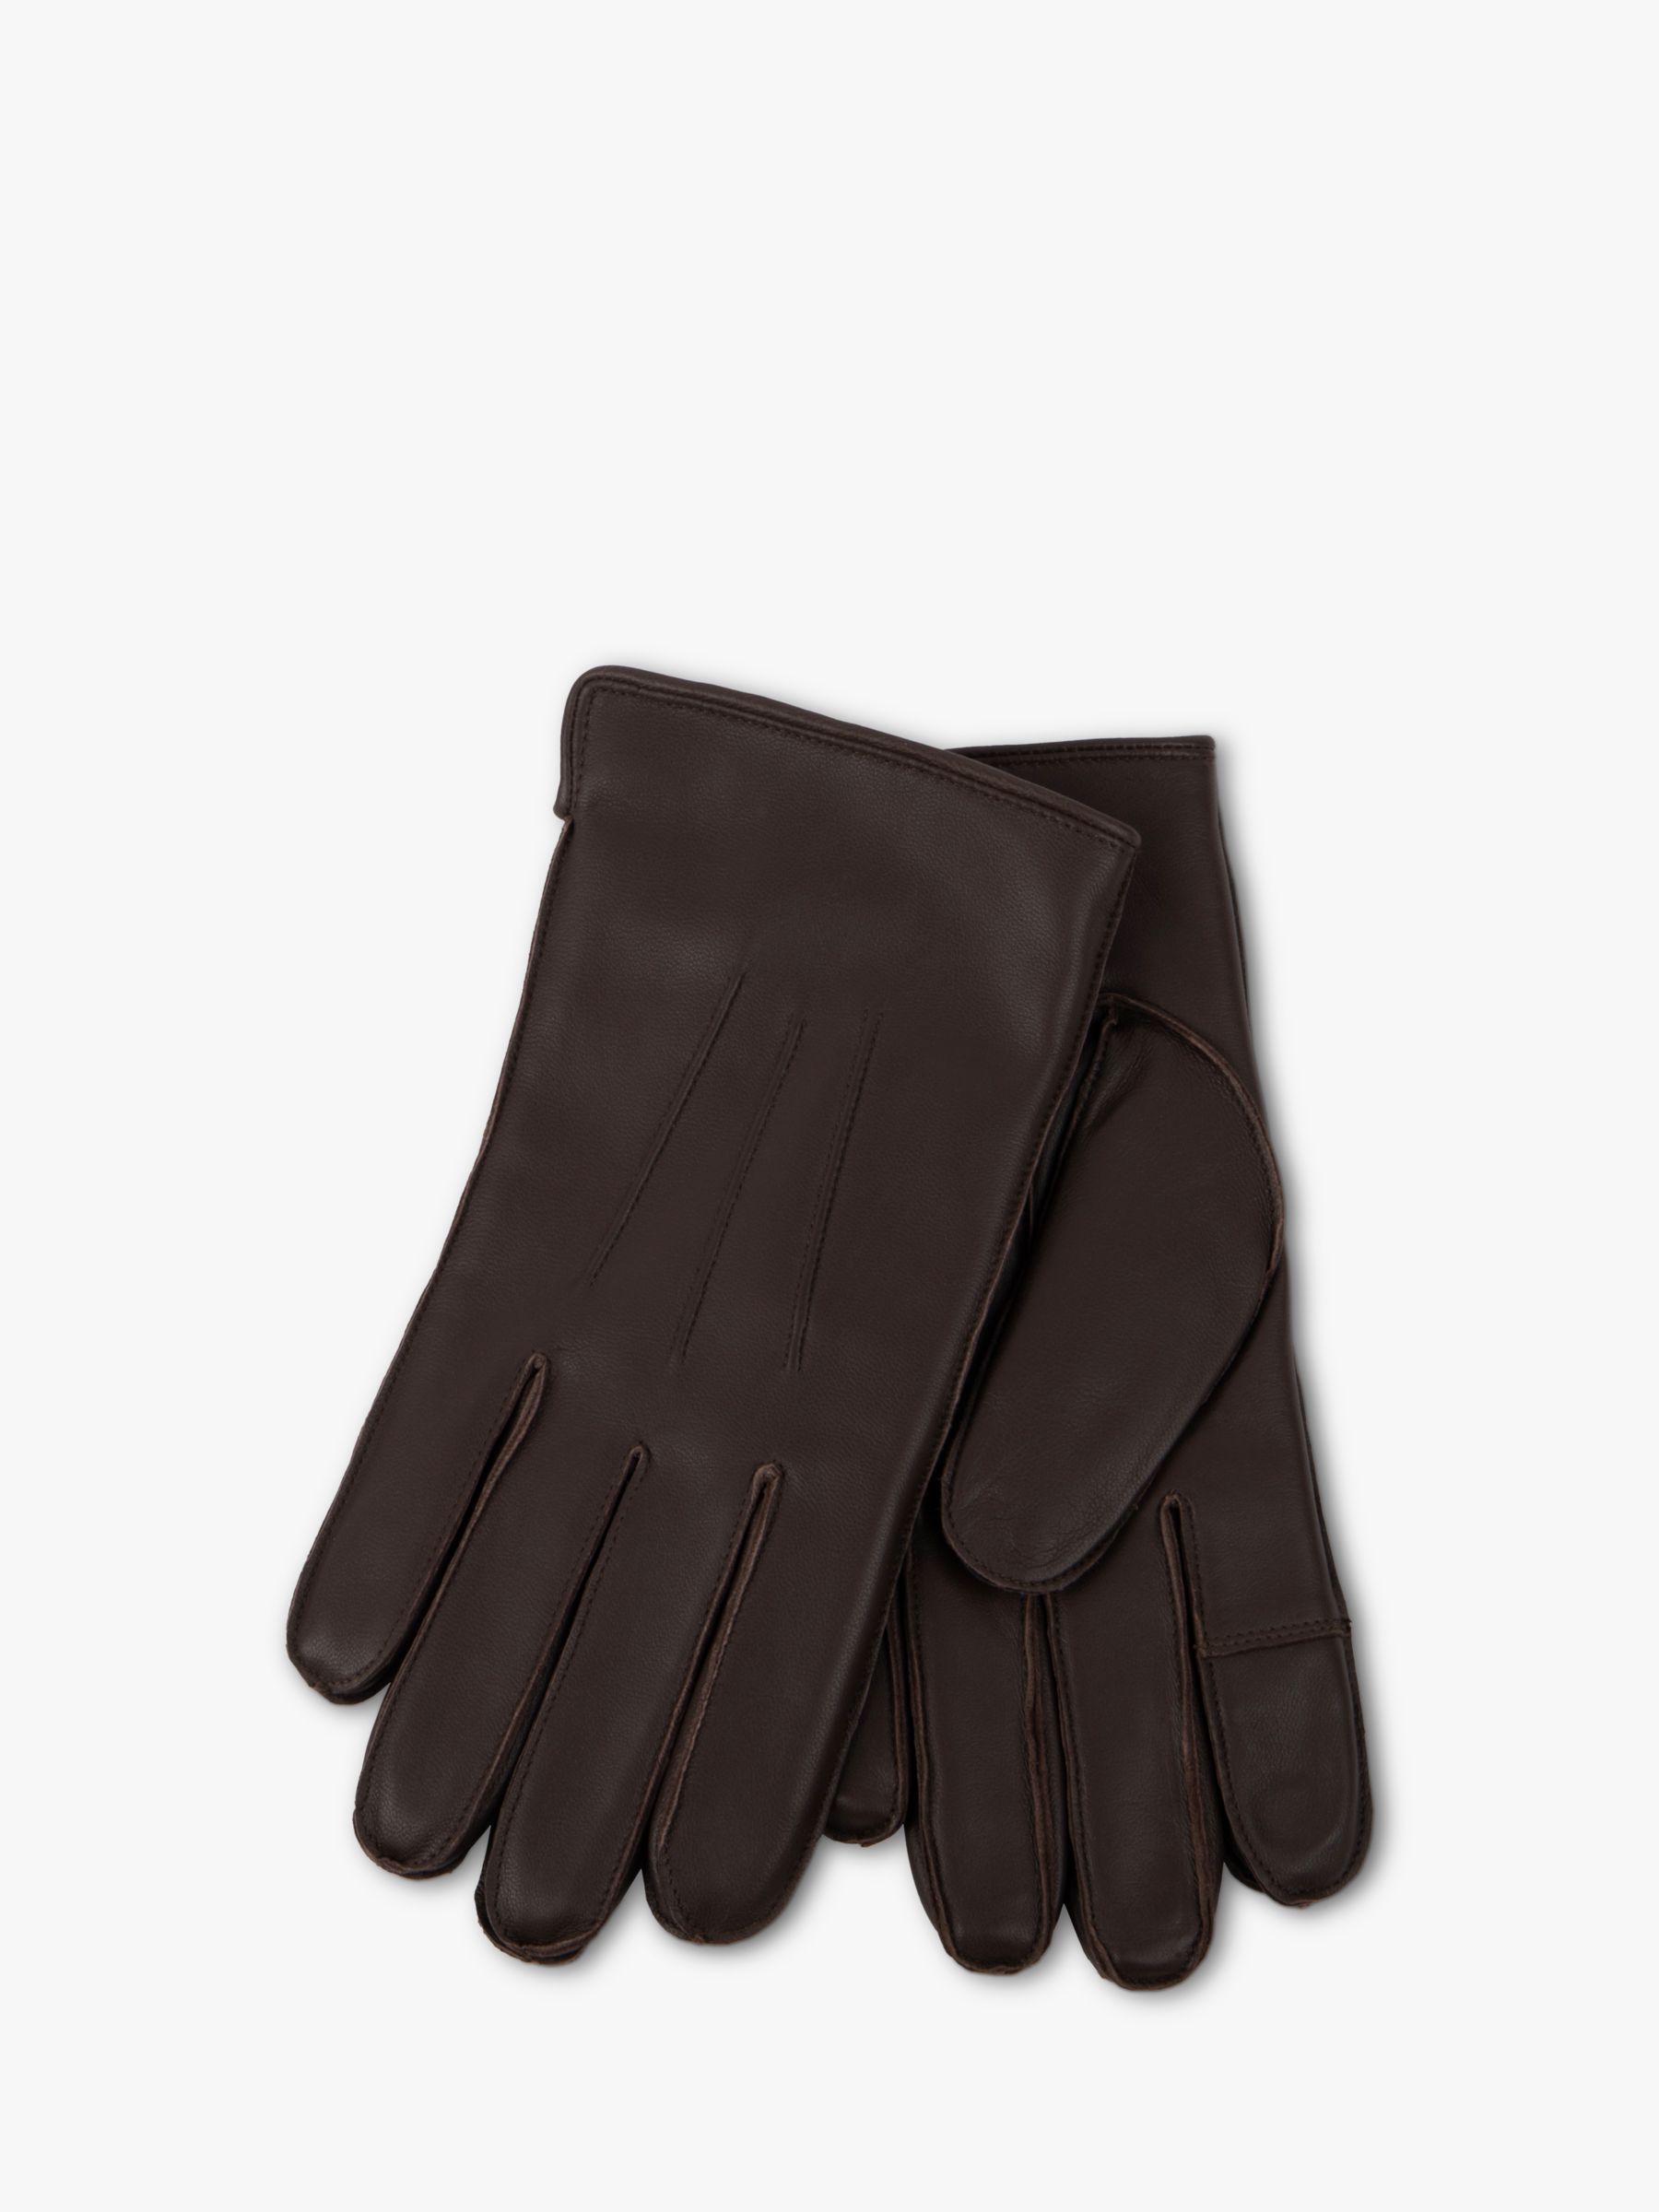 Кожаные перчатки премиум-класса с тремя точками totes, шоколад 1 пара кожаные рабочие перчатки класса премиум